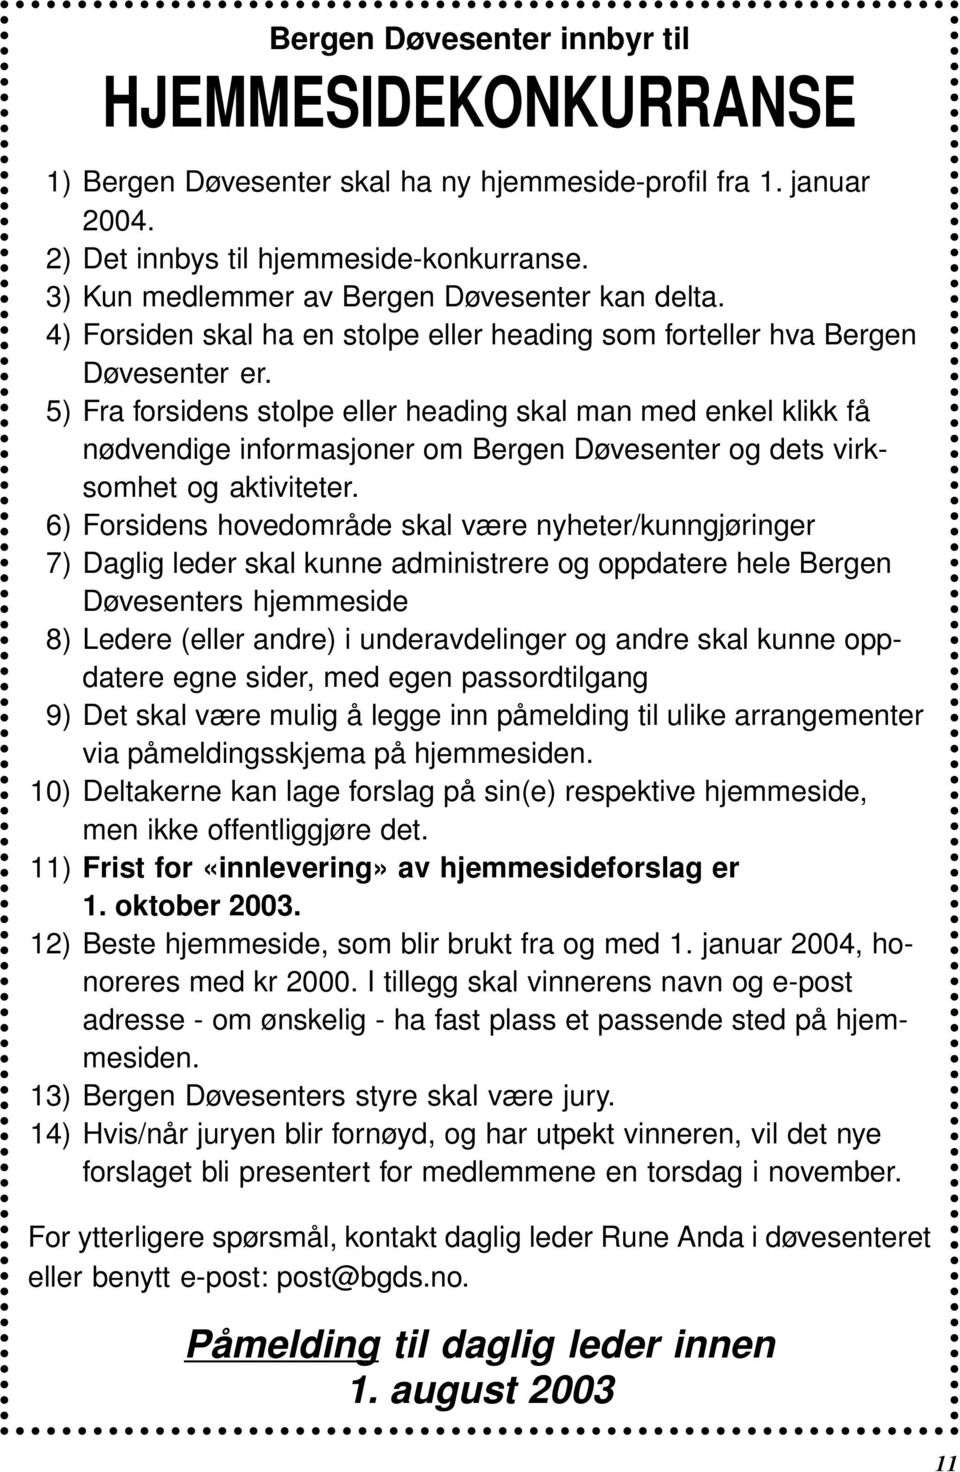 5) Fra forsidens stolpe eller heading skal man med enkel klikk få nødvendige informasjoner om Bergen Døvesenter og dets virksomhet og aktiviteter.